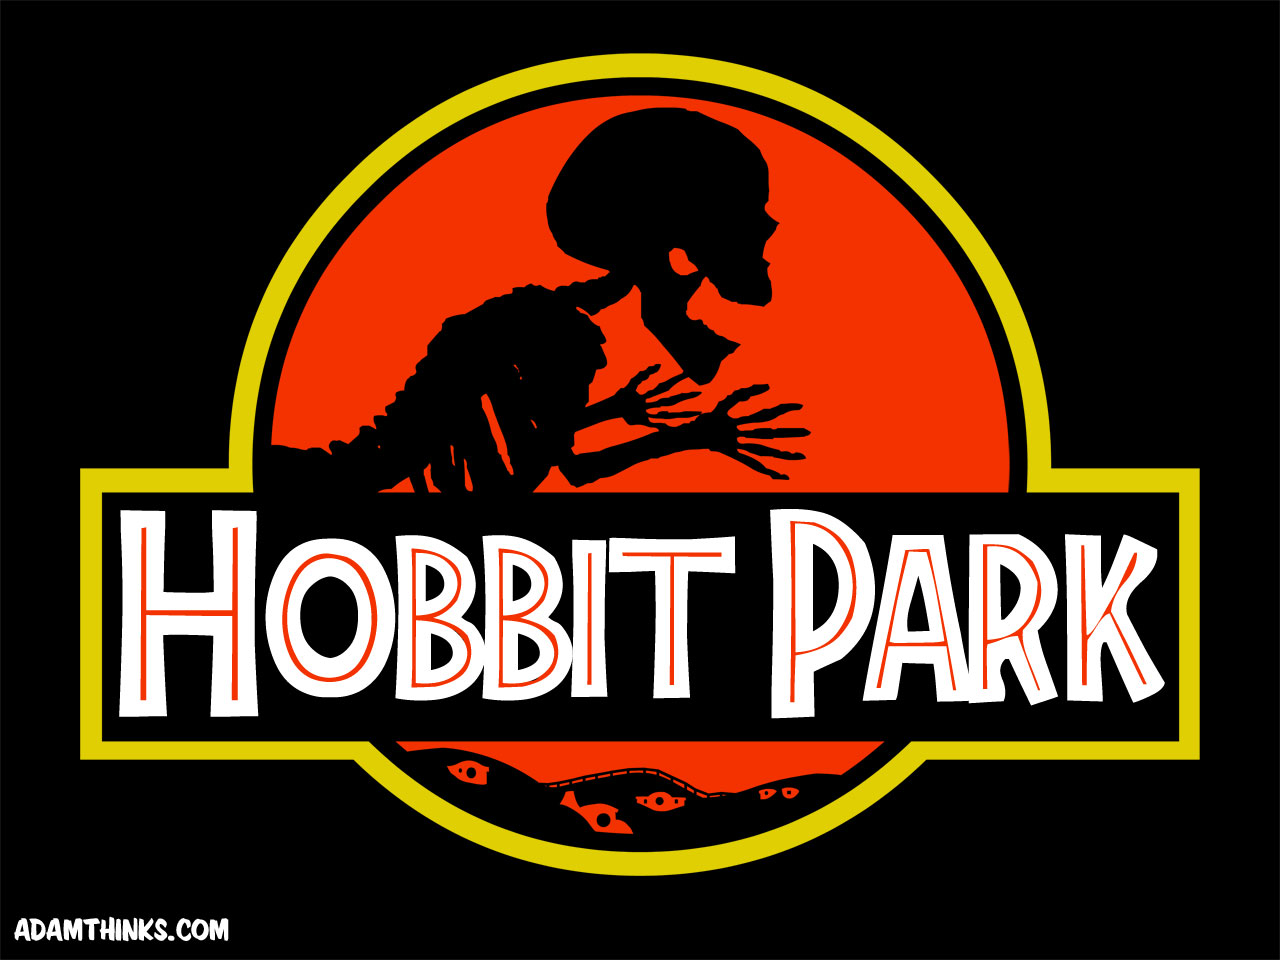 hobbit-park-desktop.jpg